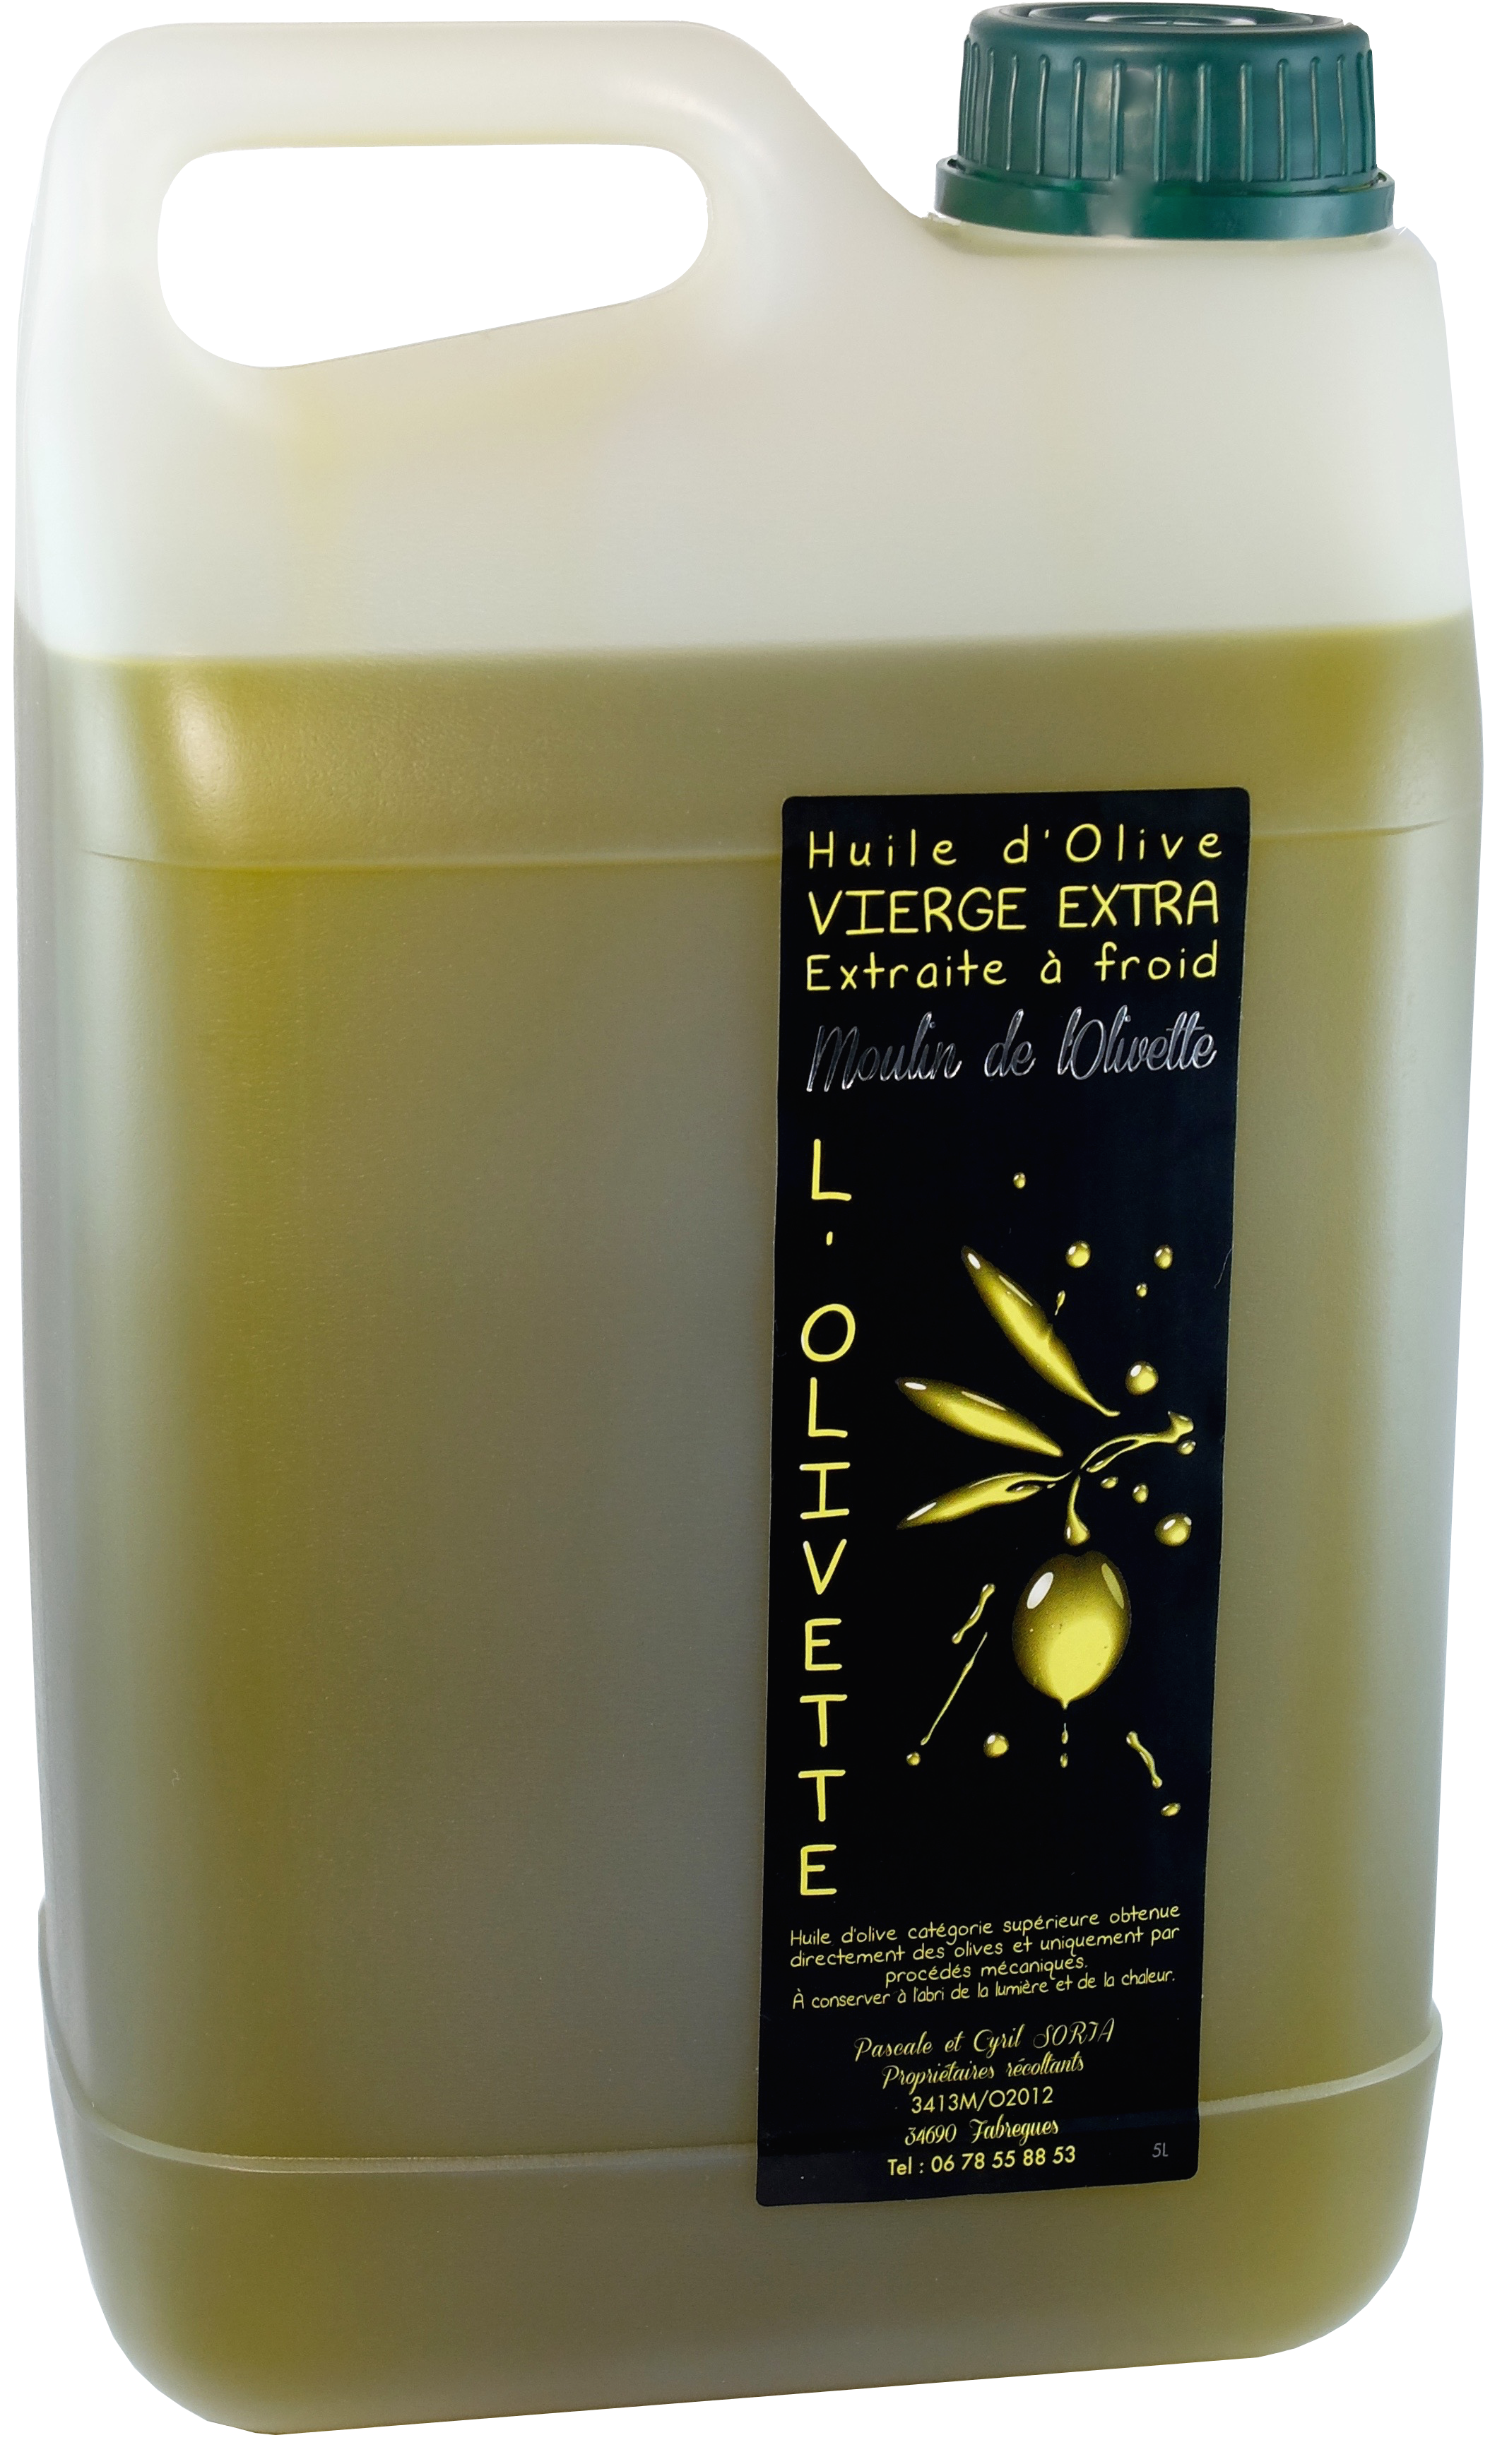 Huile d'olive en ligne : production oléicole, producteur - Moulin